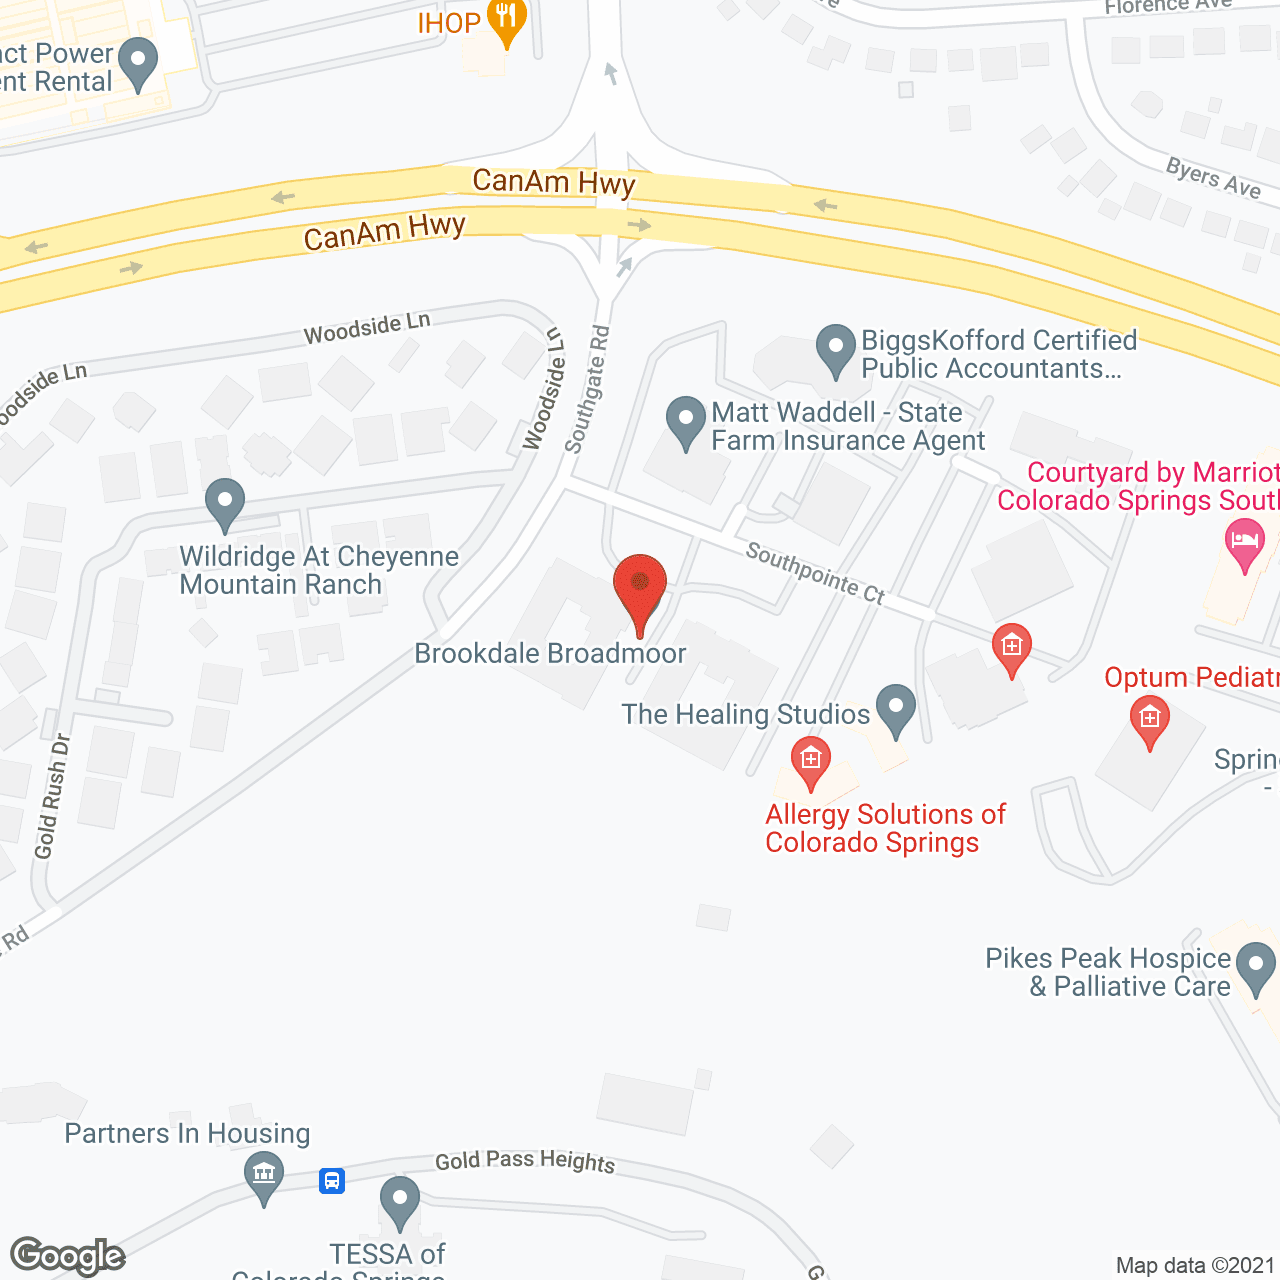 Brookdale Broadmoor in google map